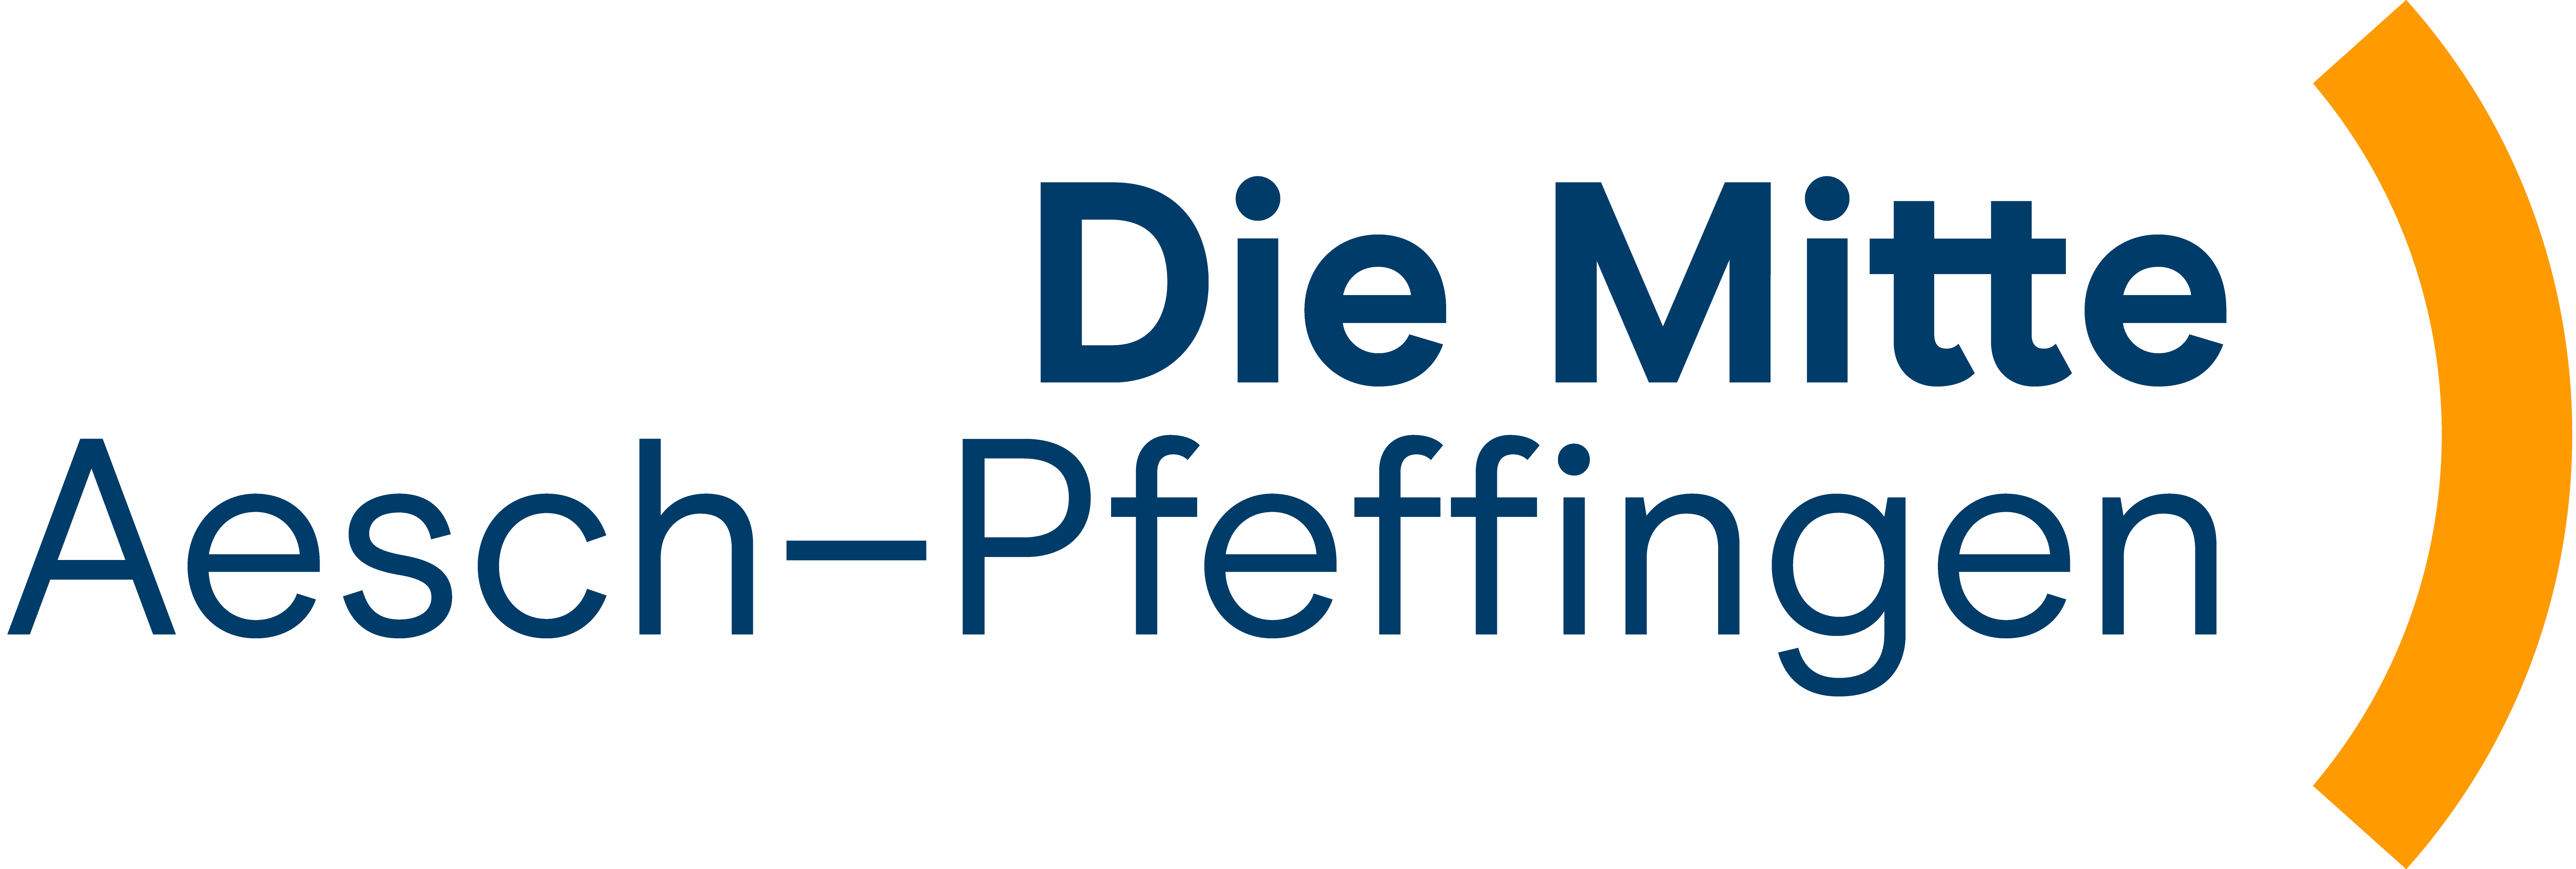 Logo Die Mitte Aesch-Pfeffingen